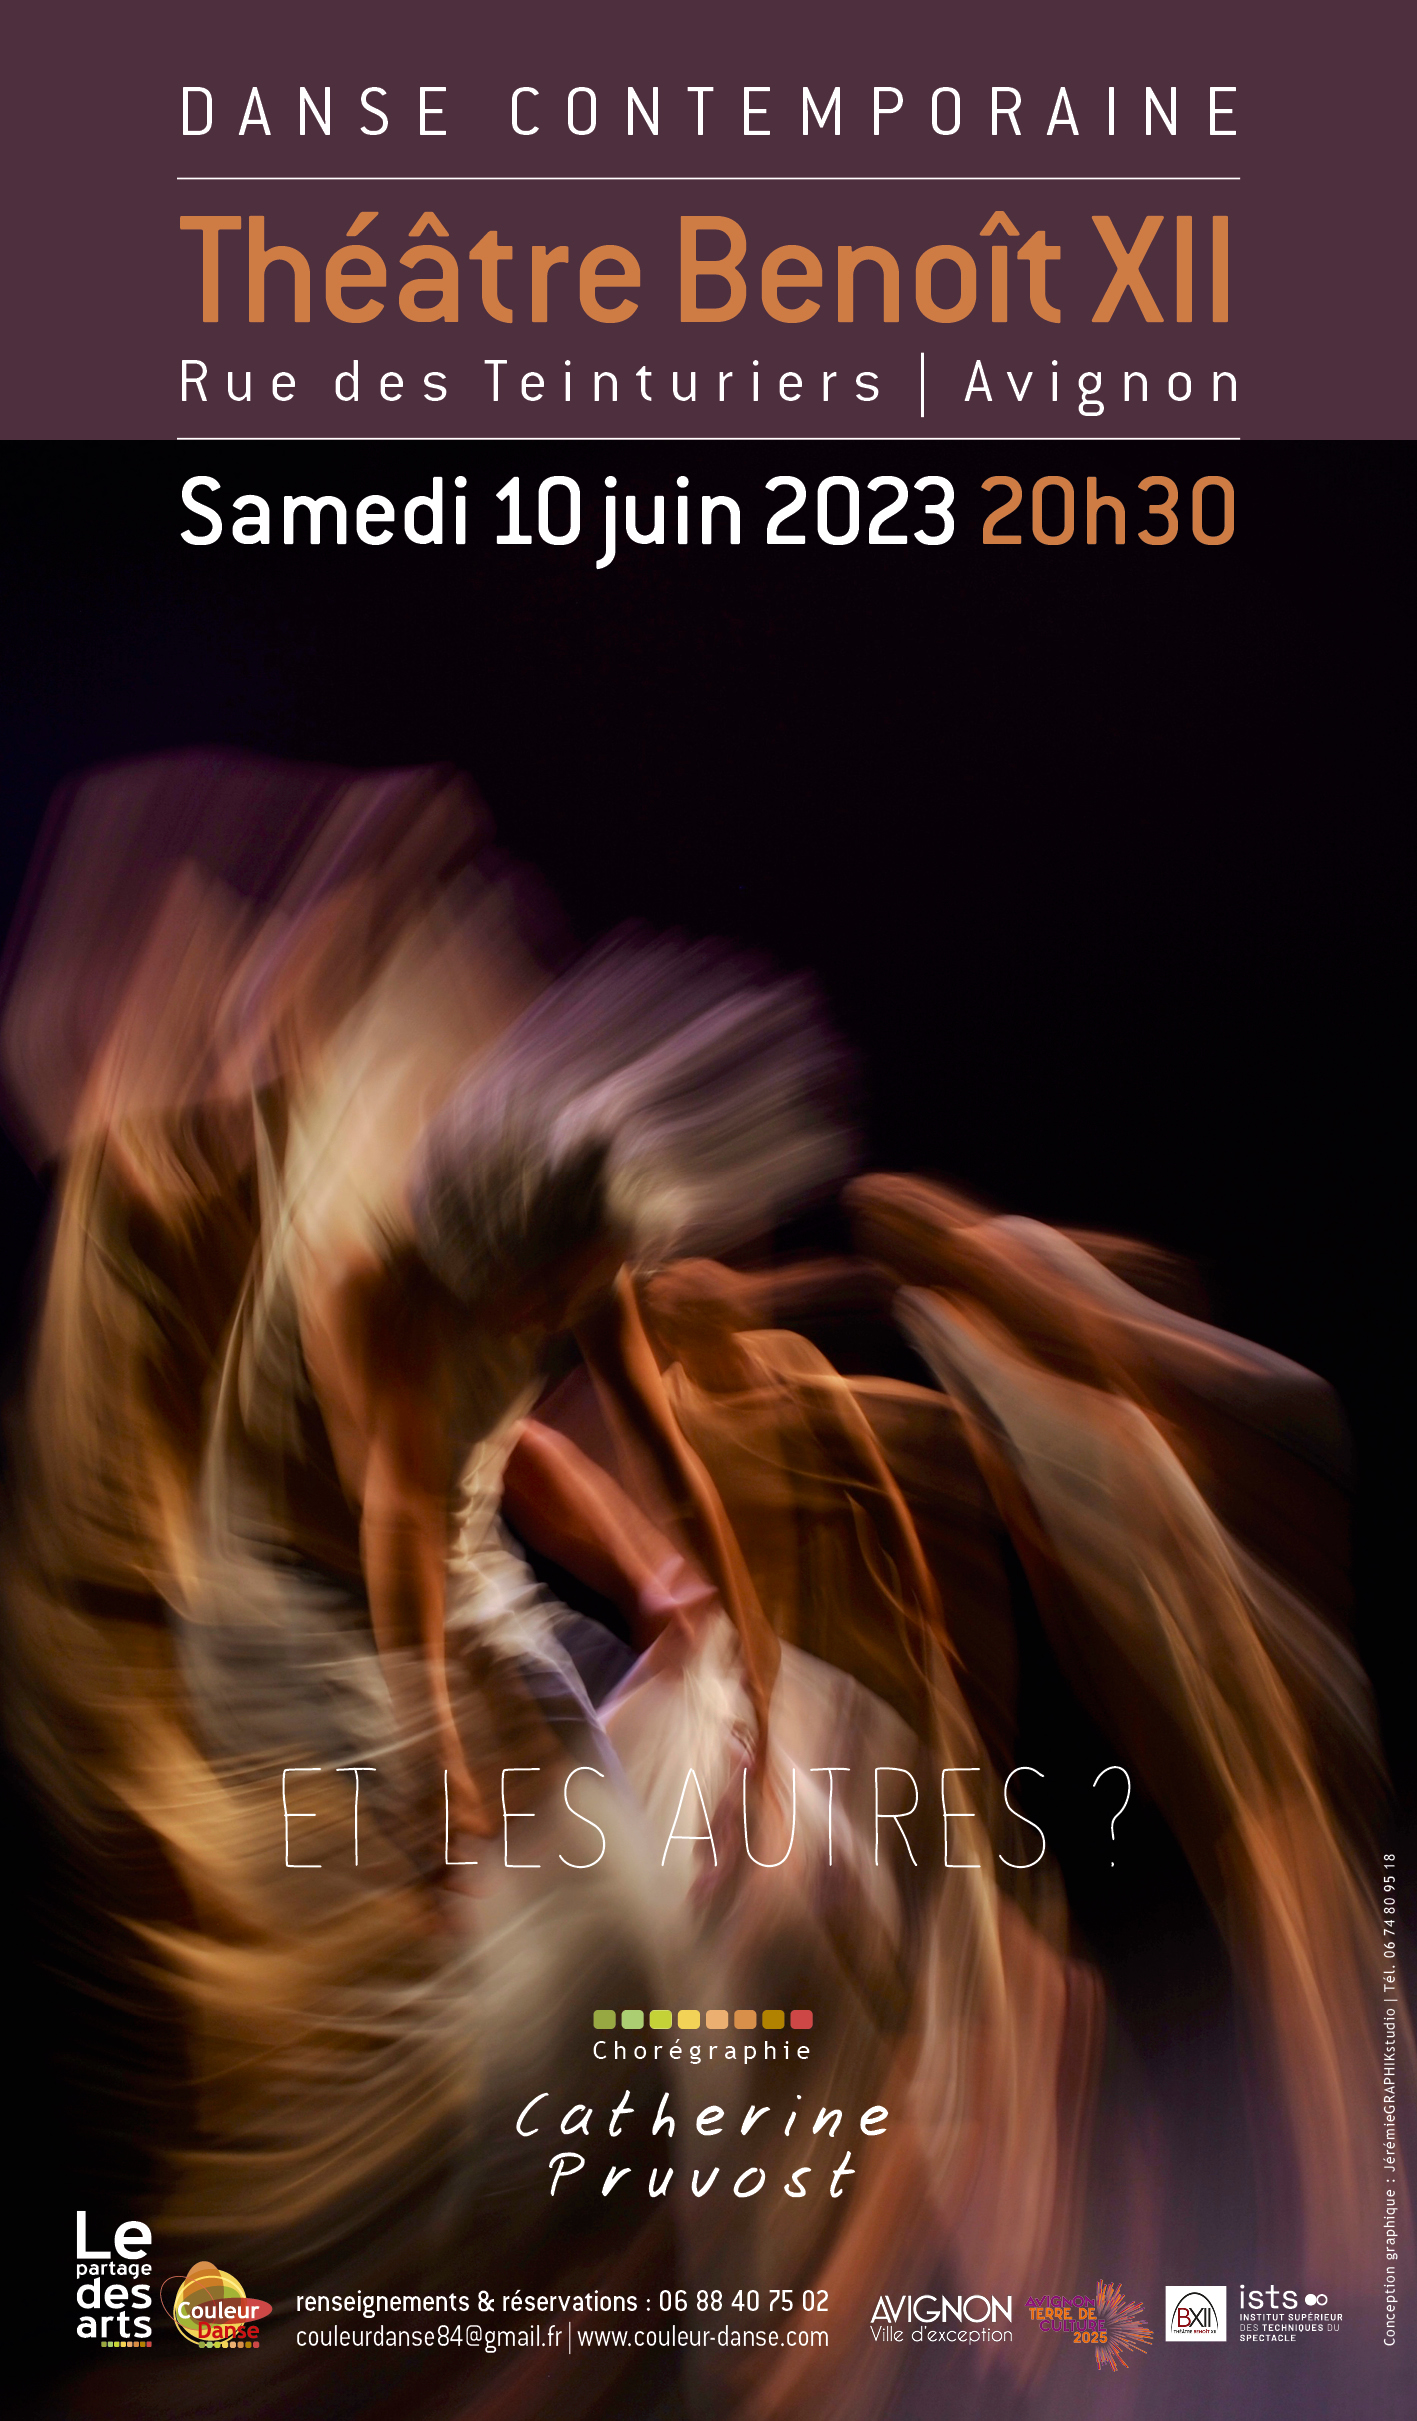 Le Théâtre Benoît XII accueille Couleur Danse / Le Partage des Arts, pour le spectacle « Et les autres ? », le 10 juin 2023